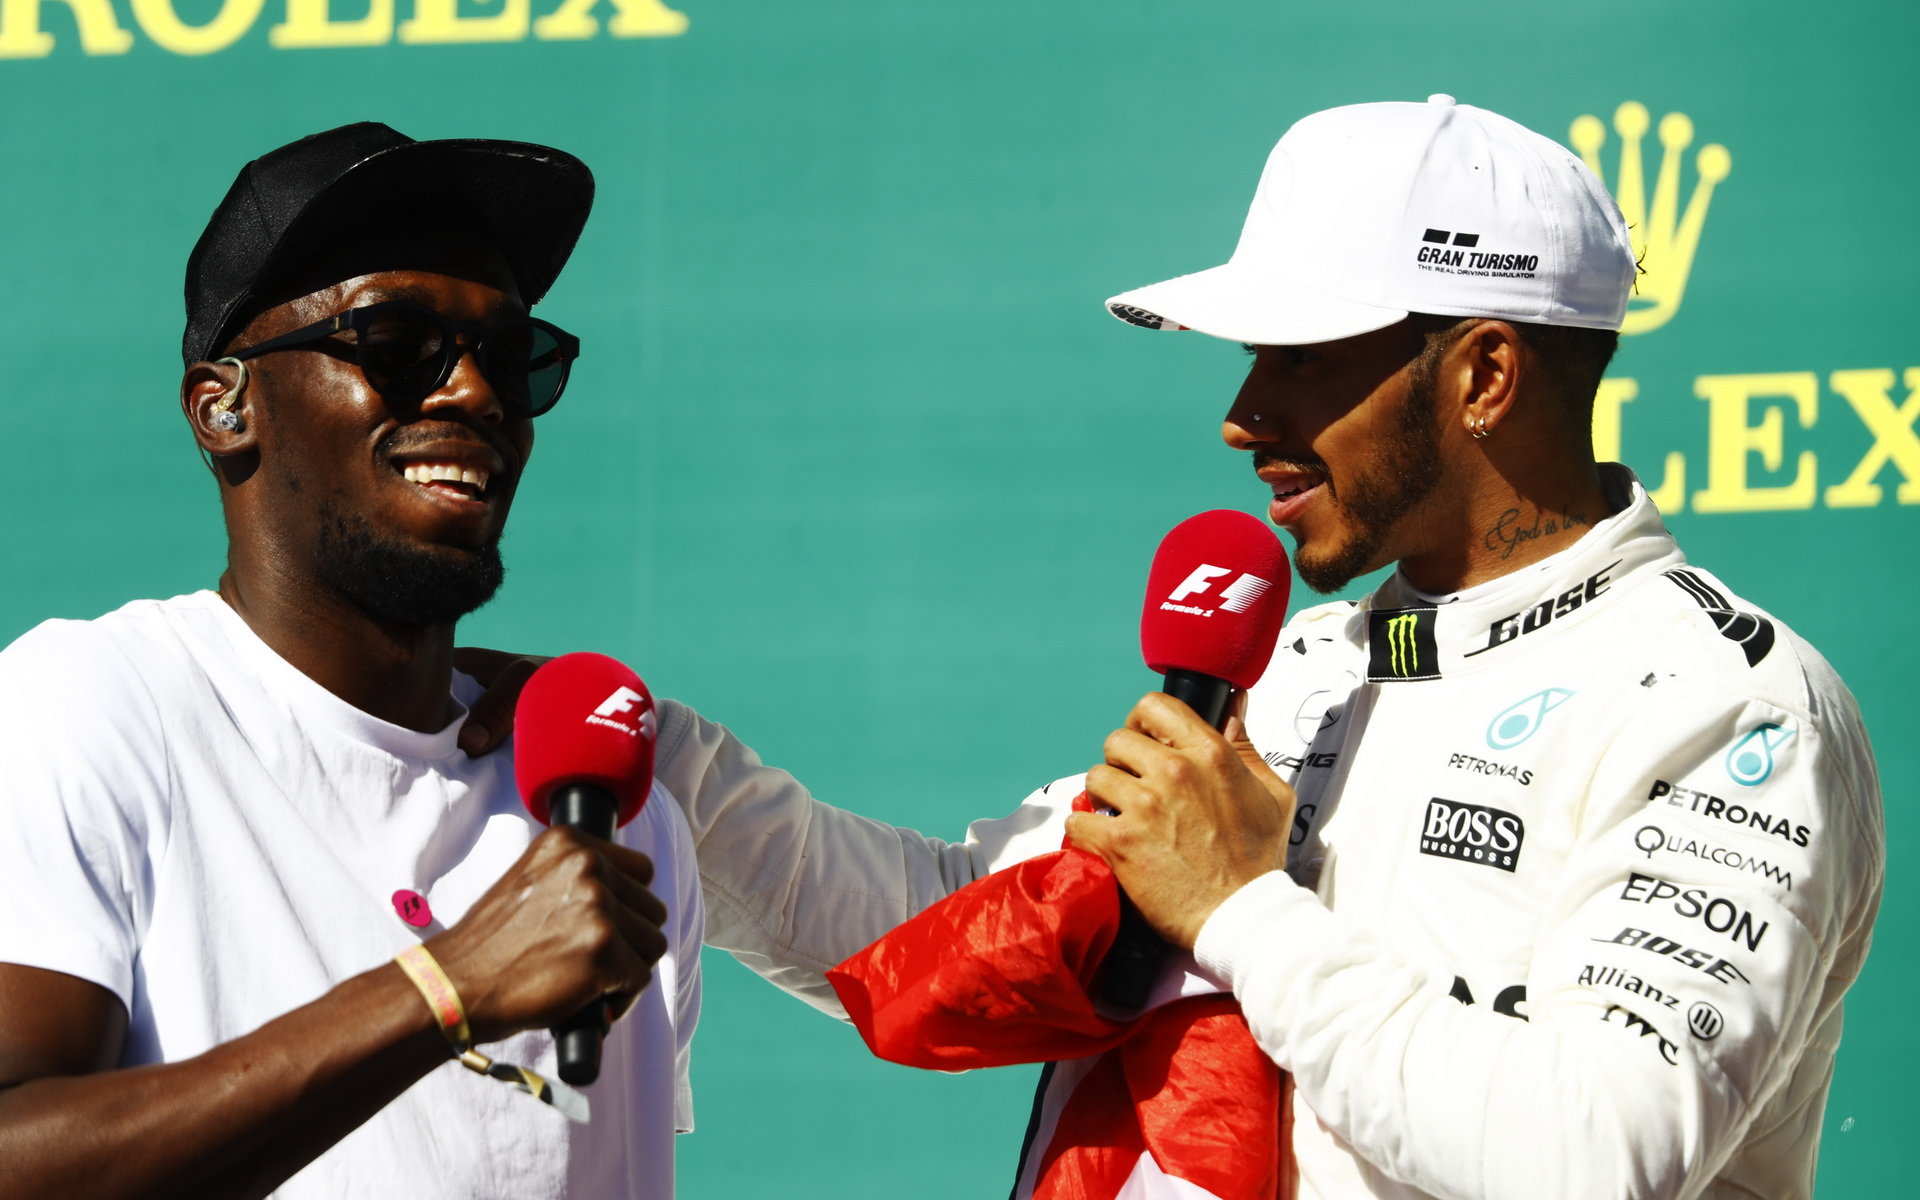 Lewis Hamilton v rozhovoru s Usainem Boltem po závodě v Austinu